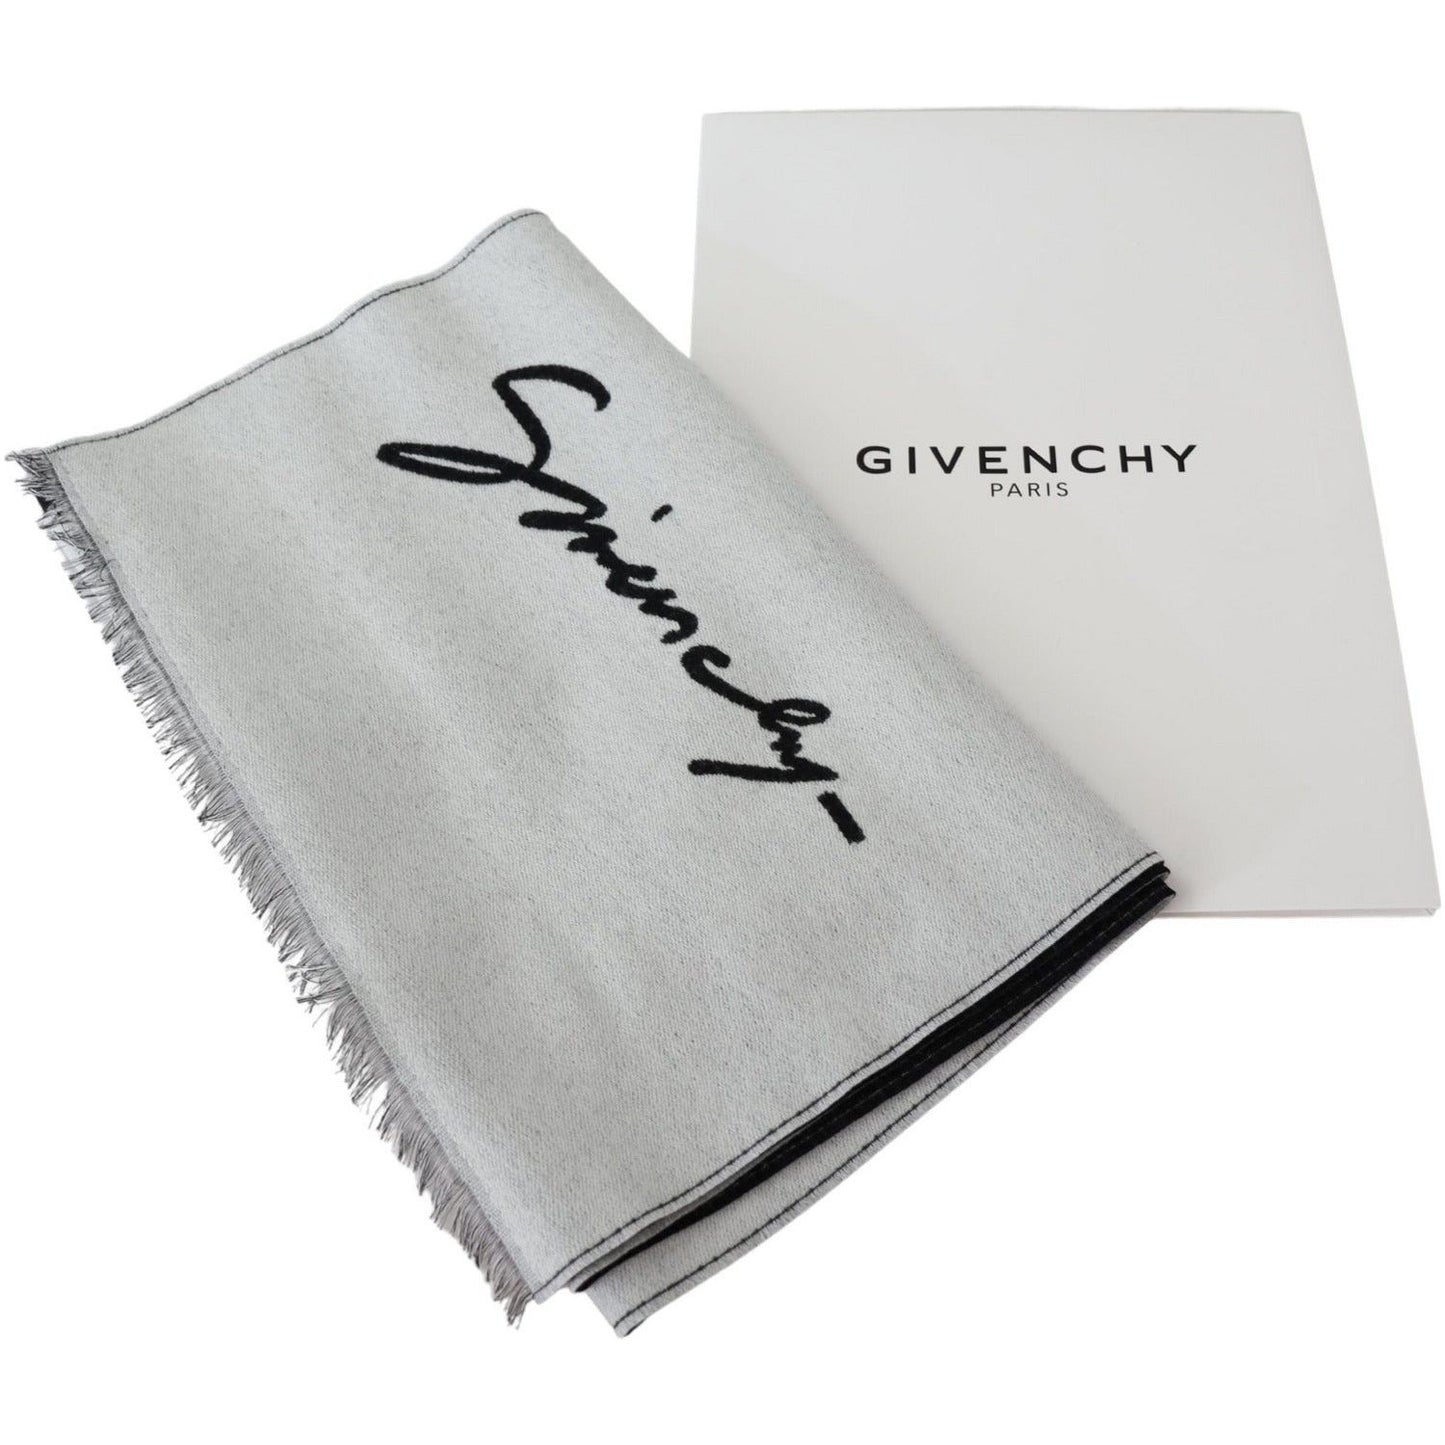 Givenchy Elegant Monochrome Wool-Silk Blend Scarf Wool Wrap Shawls black-white-wool-unisex-winter-warm-scarf-wrap-shawl IMG_7467-scaled-d53f9080-76a.jpg